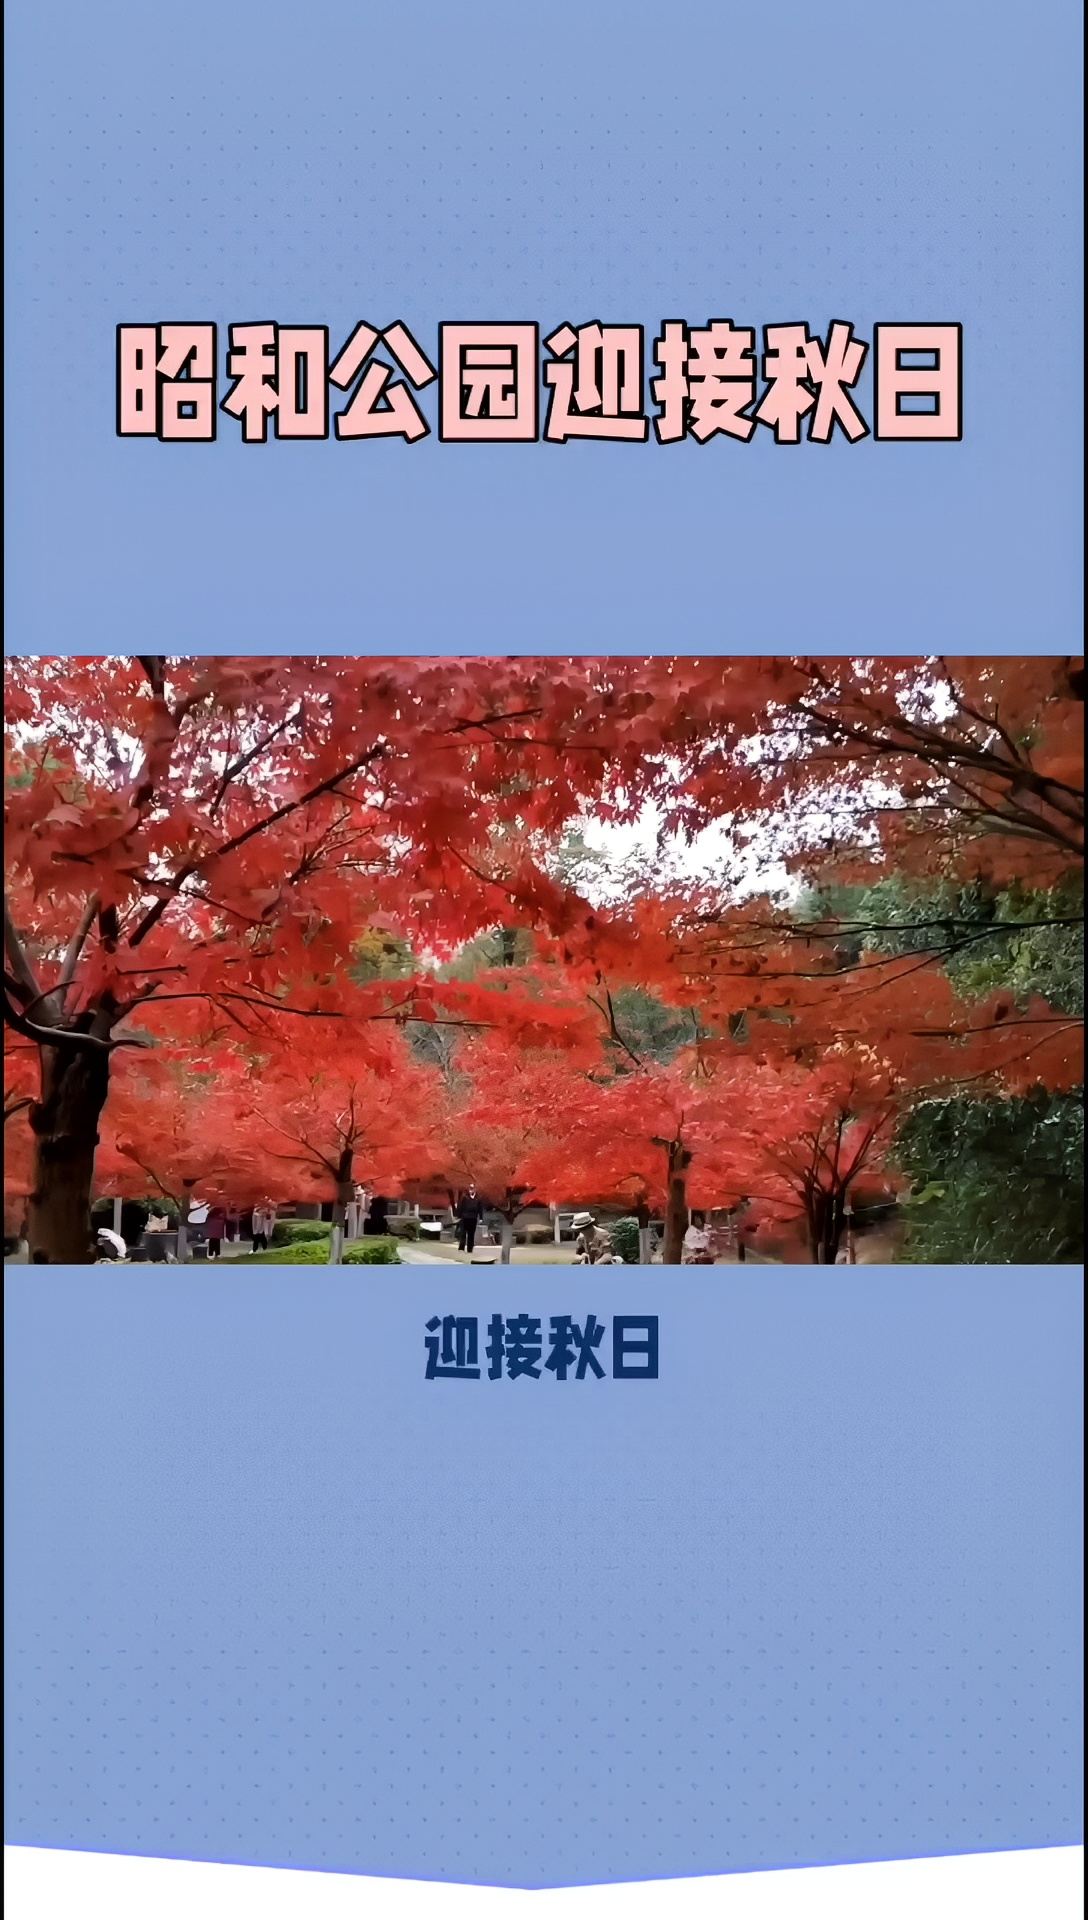 昭和公园红叶：一场秋日的视觉盛宴